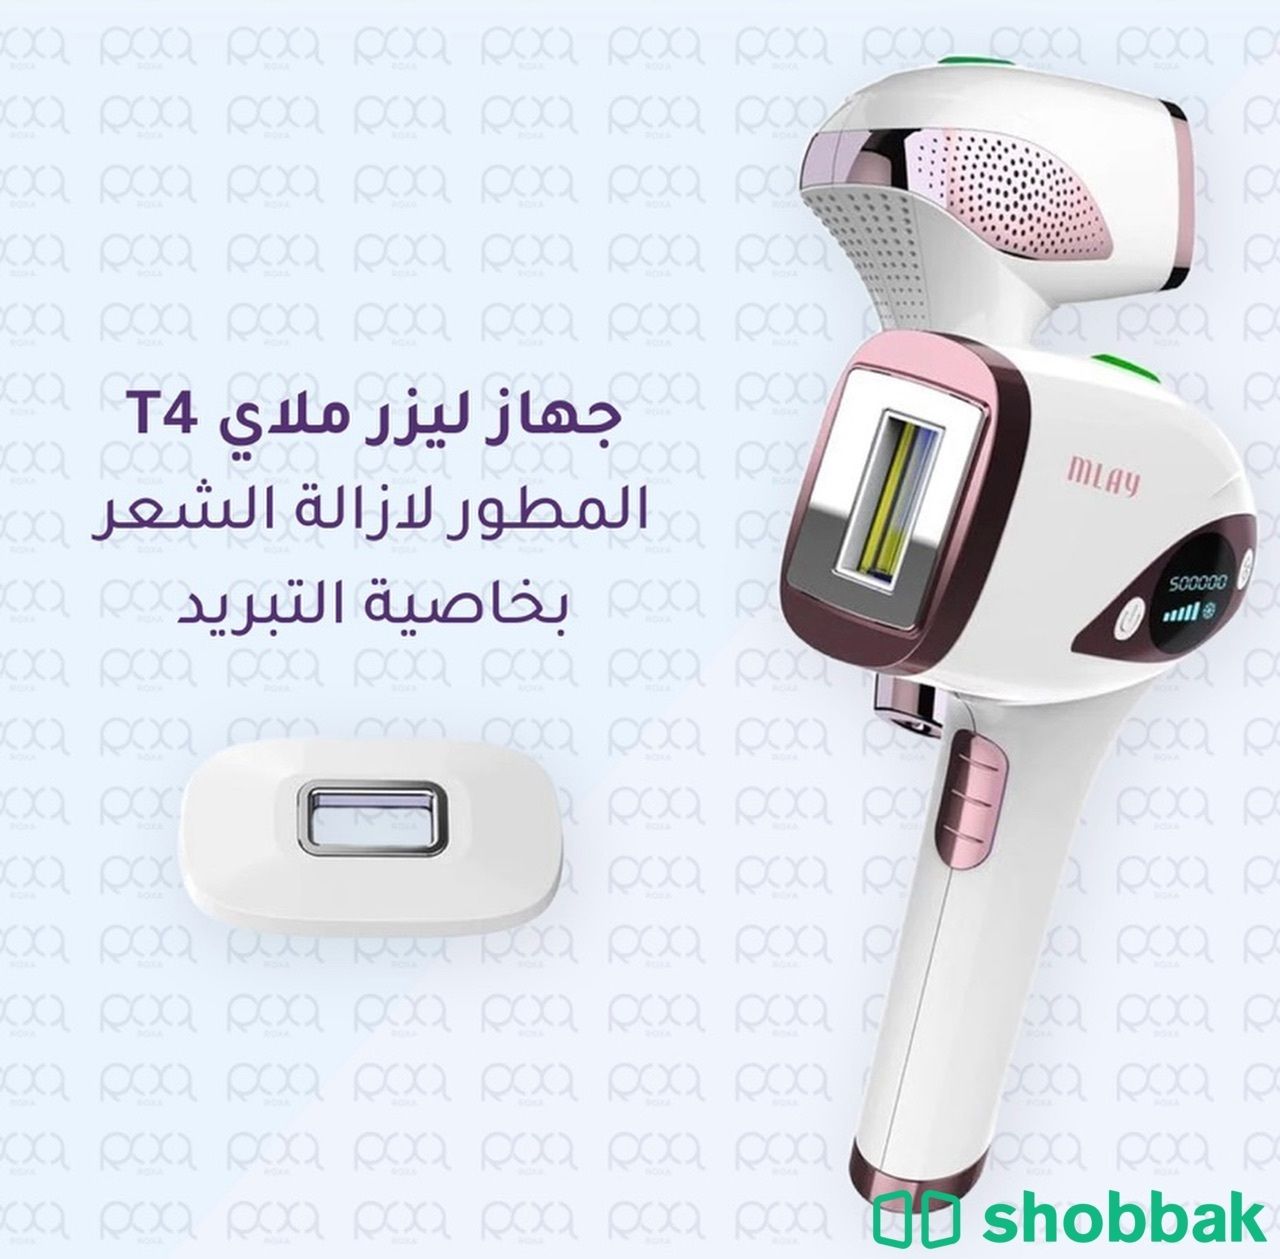 جهاز ليزر منزلي ملاي T4 Shobbak Saudi Arabia